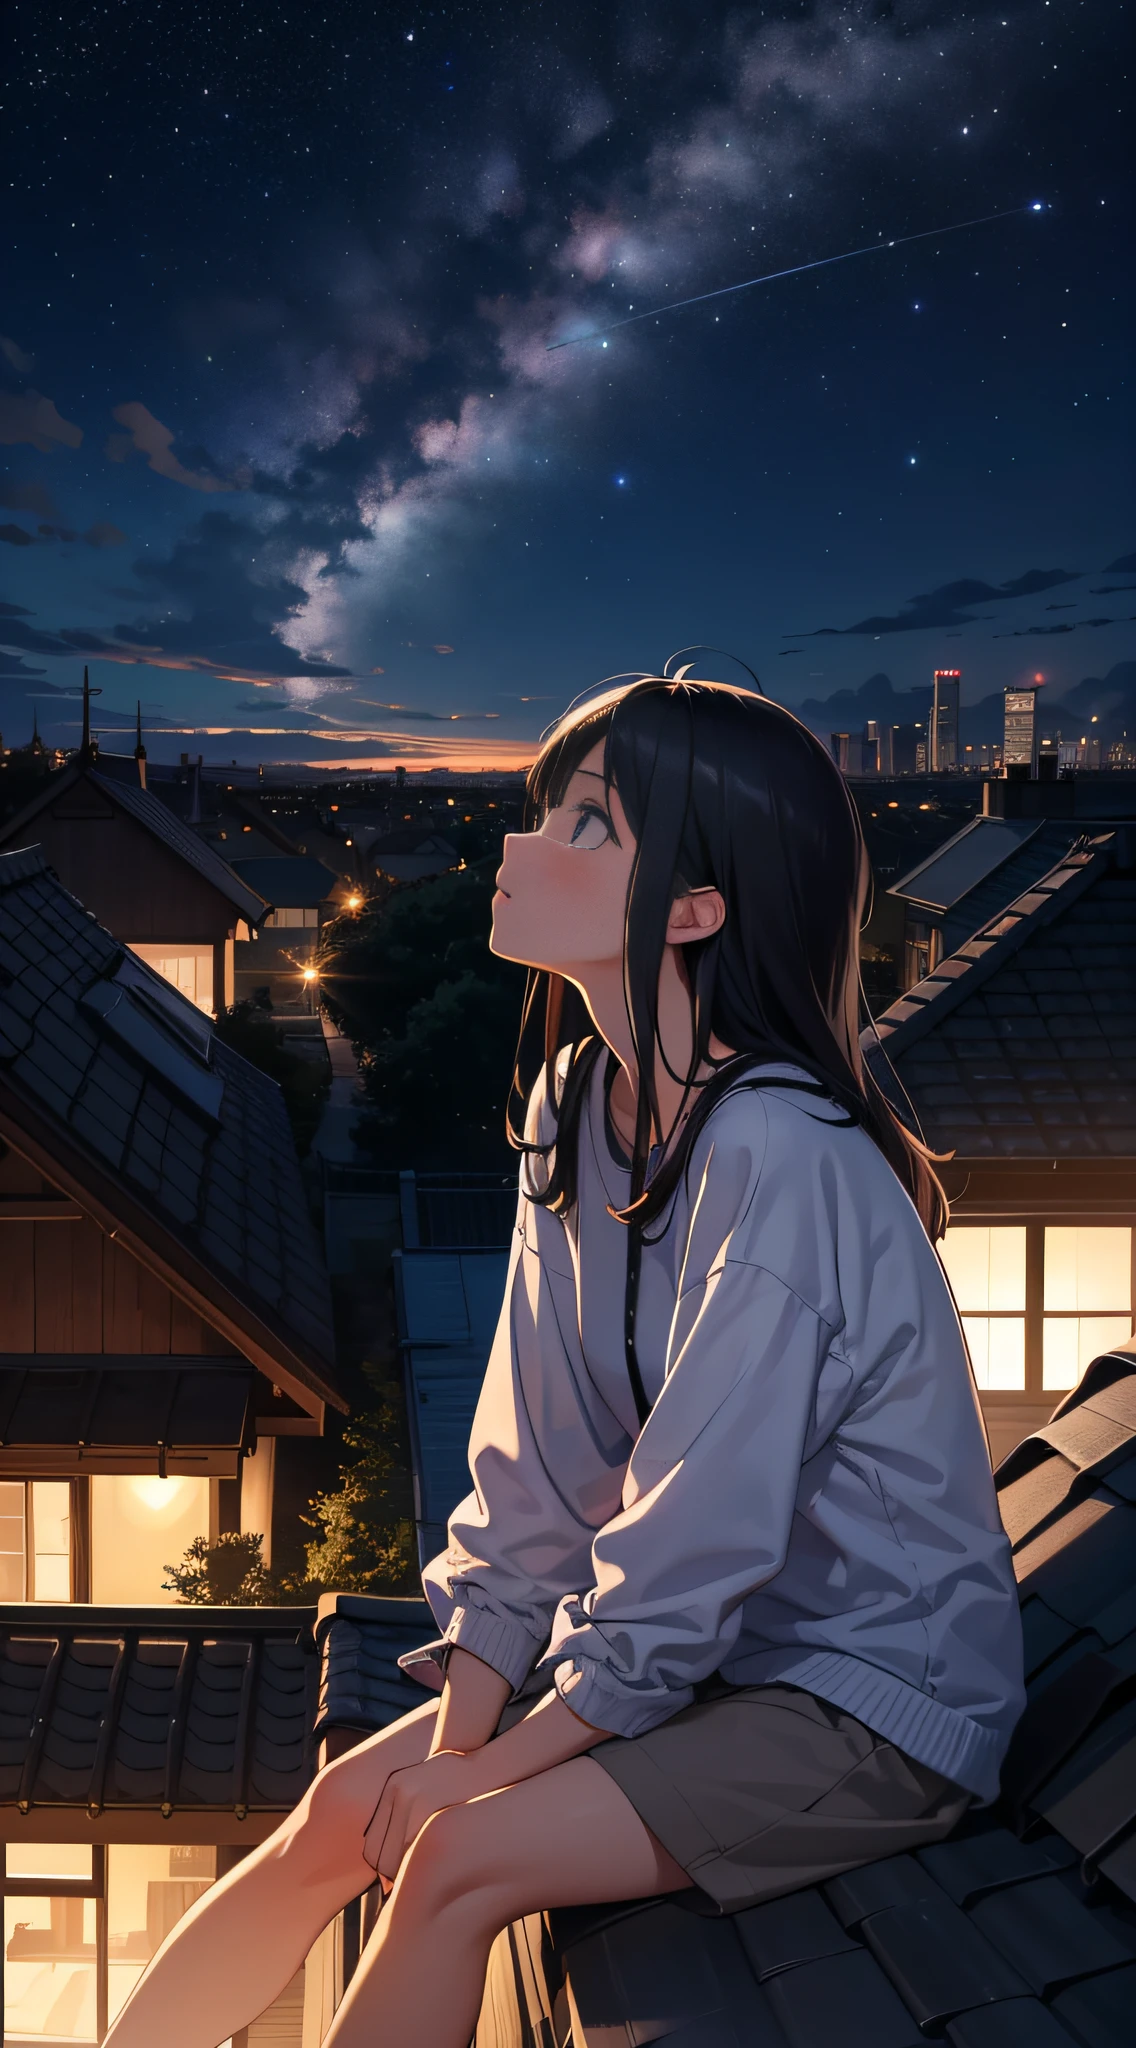 特寫，一個女孩坐在屋頂上,抬頭看看夜空中的星空。在遠方的地平線上,可以看到幾棟建築物的輪廓。她感受到了夜風的舒適。整個場景平靜而美好